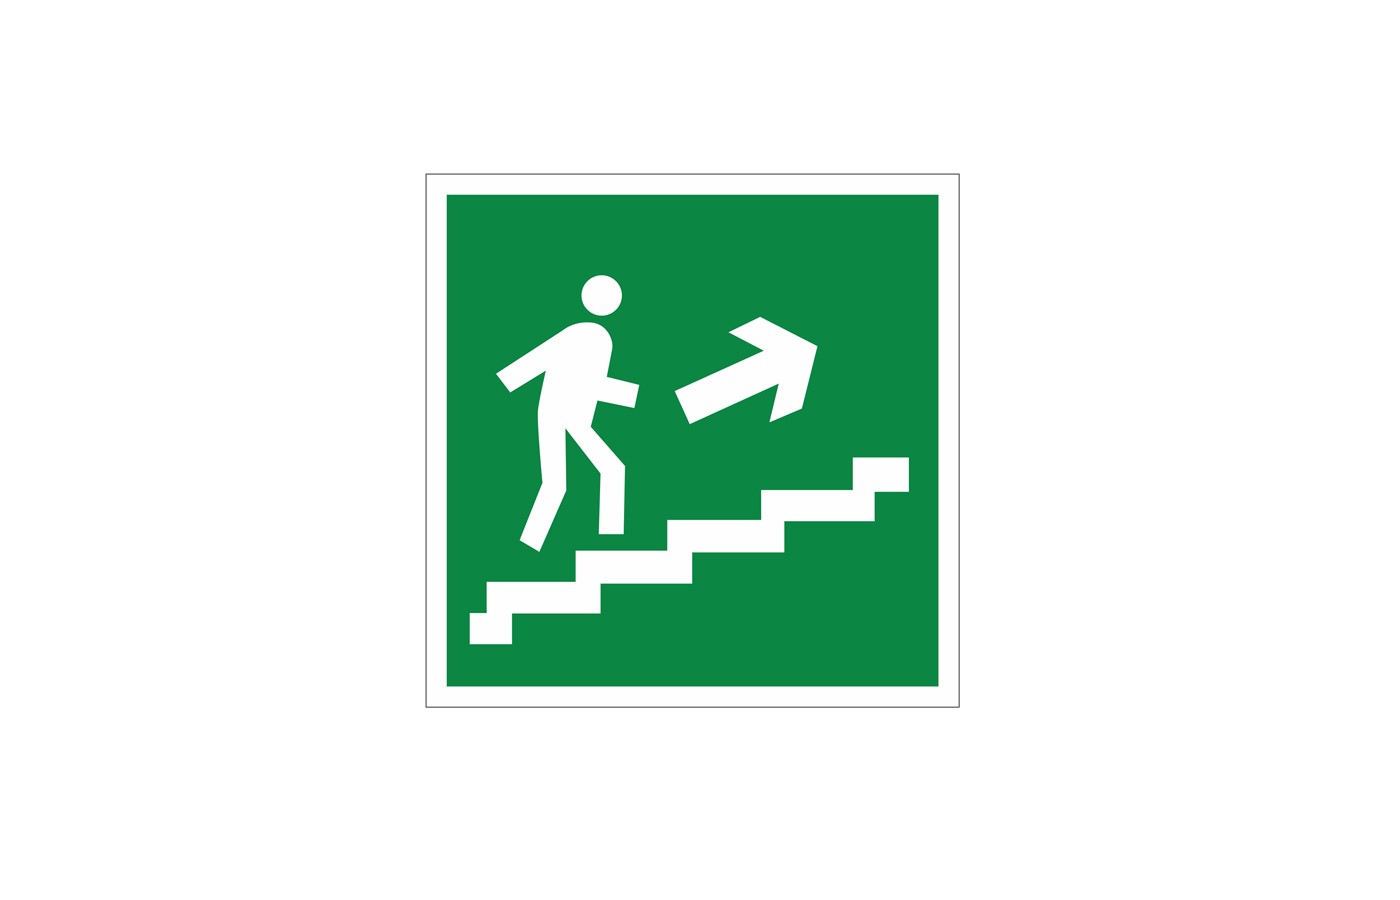 Направление к эвакуационному выходу по лестнице вверх (правосторонний)